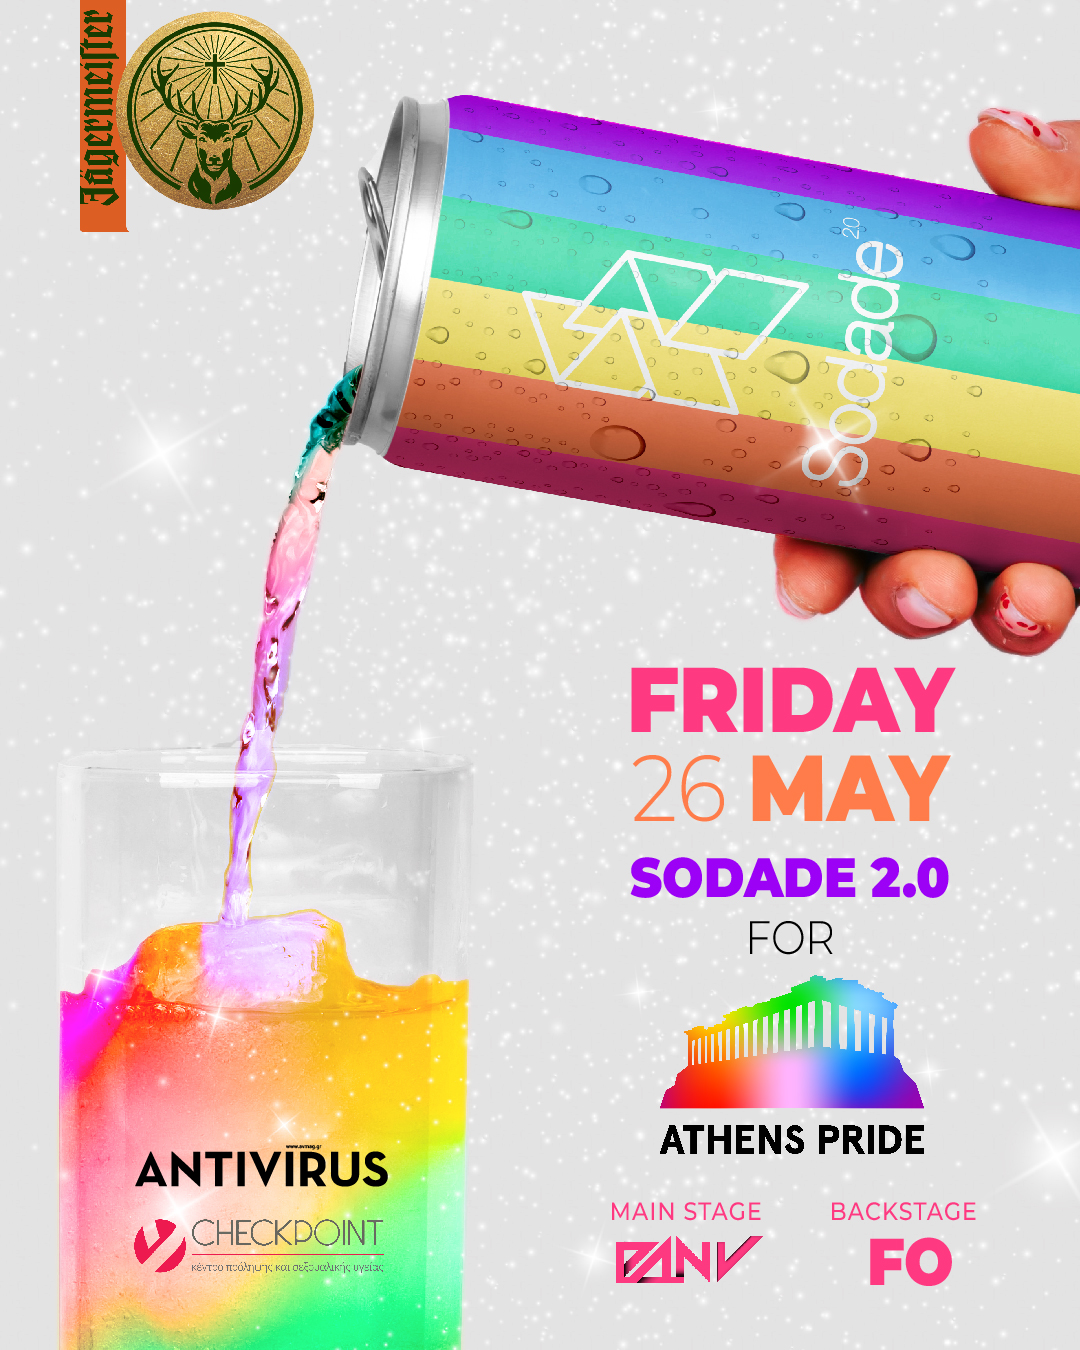 Sodade2 for Athens Pride